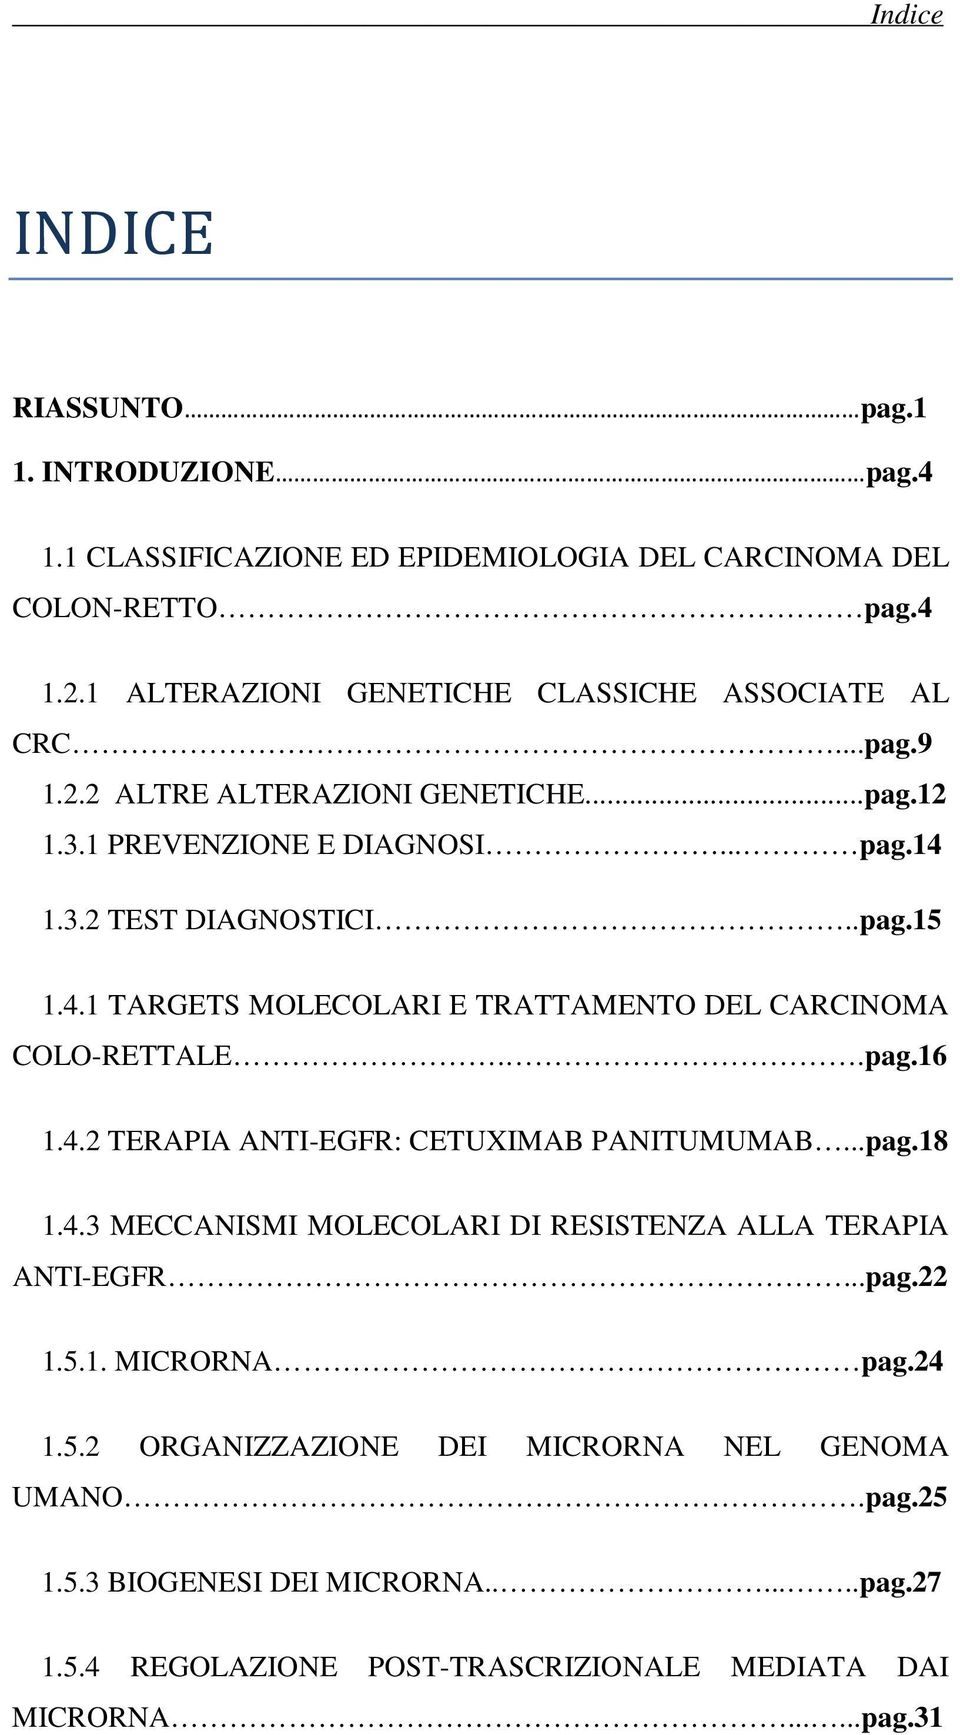 1.3.2 TEST DIAGNOSTICI..pag.15 1.4.1 TARGETS MOLECOLARI E TRATTAMENTO DEL CARCINOMA COLO-RETTALE..pag.16 1.4.2 TERAPIA ANTI-EGFR: CETUXIMAB PANITUMUMAB...pag.18 1.4.3 MECCANISMI MOLECOLARI DI RESISTENZA ALLA TERAPIA ANTI-EGFR.